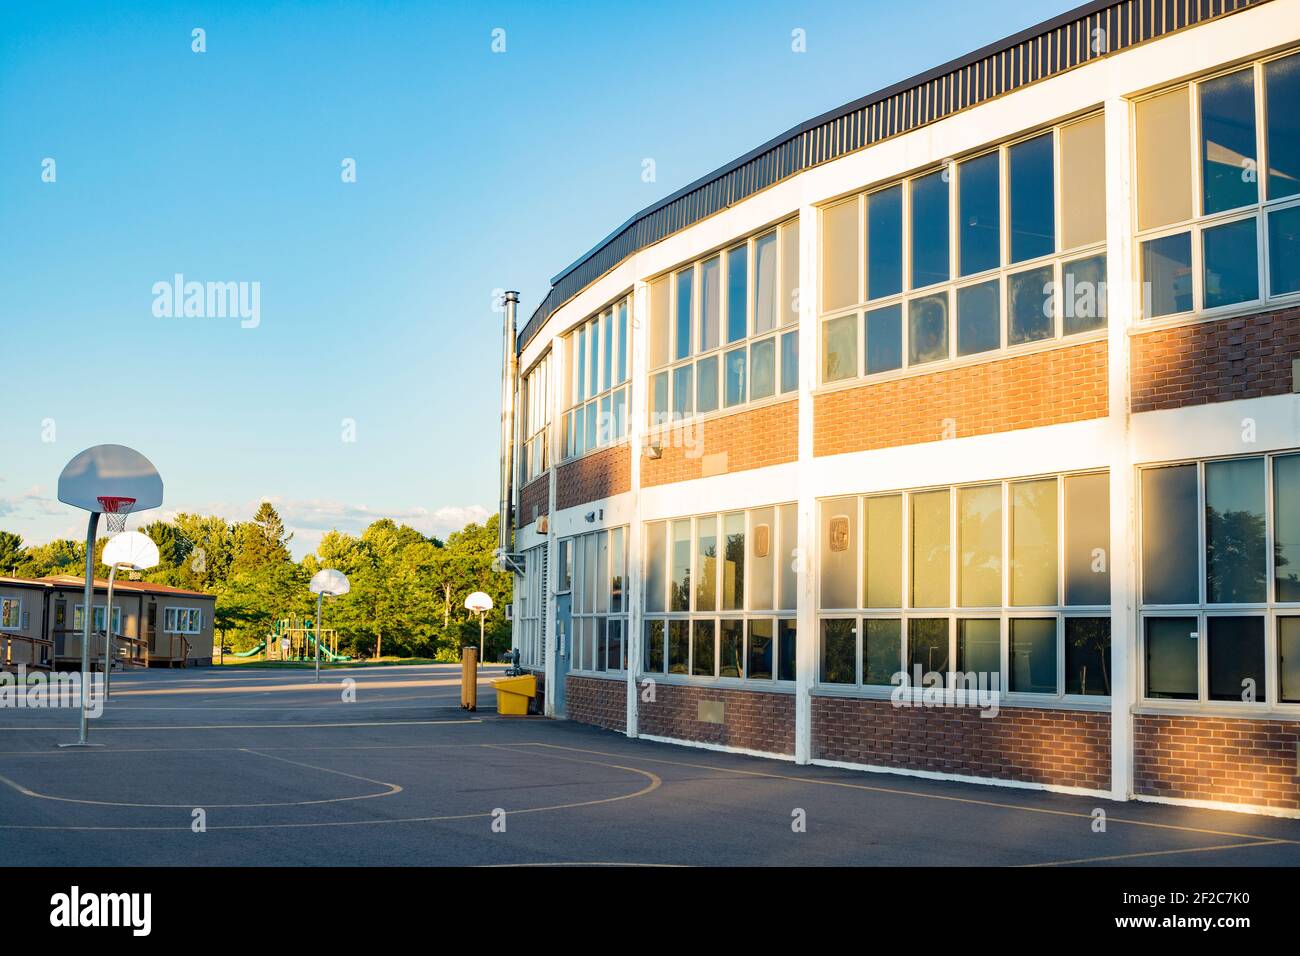 Bâtiment scolaire et cour d'école avec terrain de basket-ball Banque D'Images